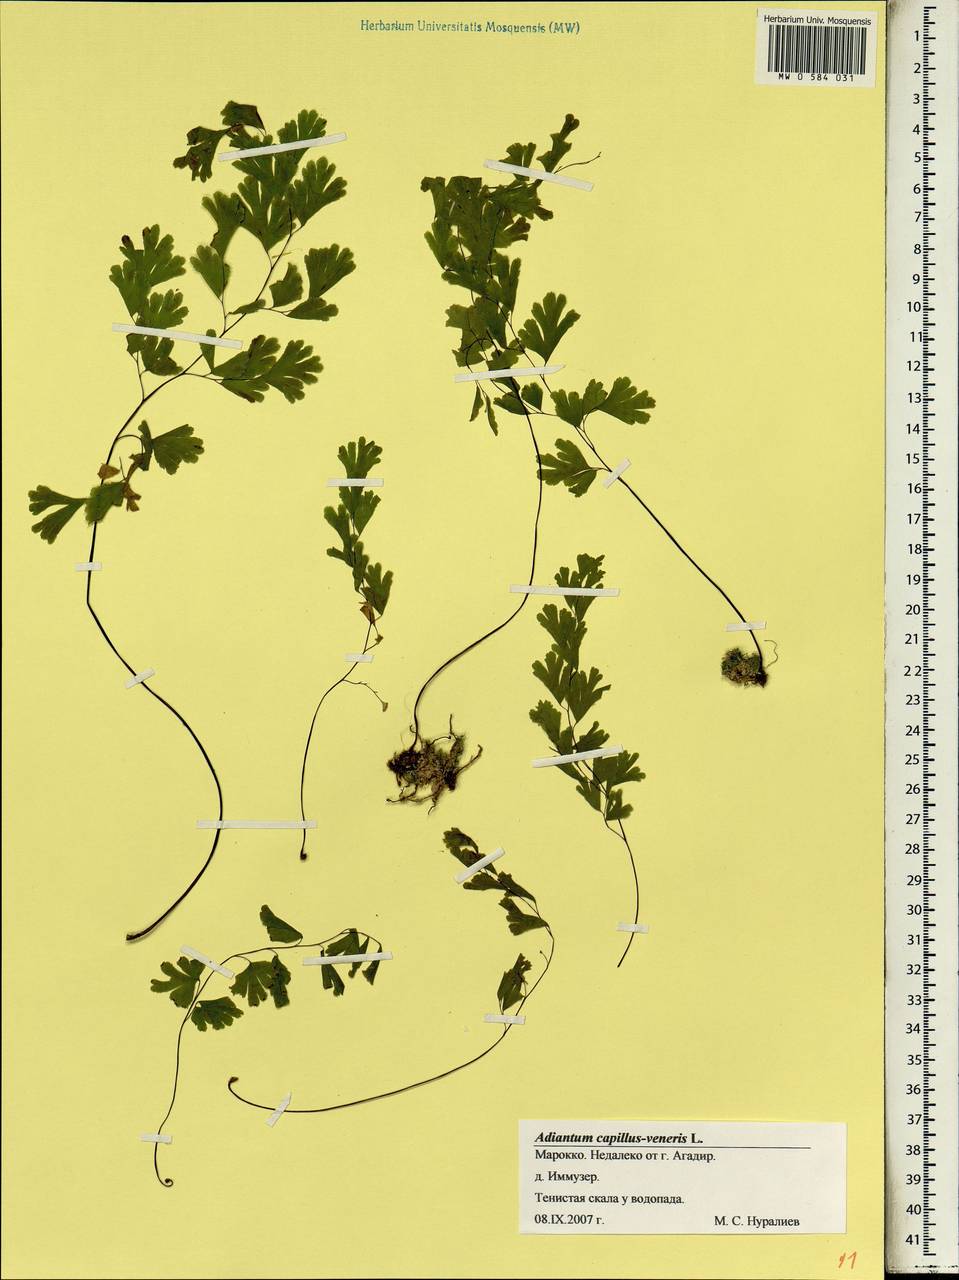 Adiantum capillus-veneris L., Africa (AFR) (Morocco)